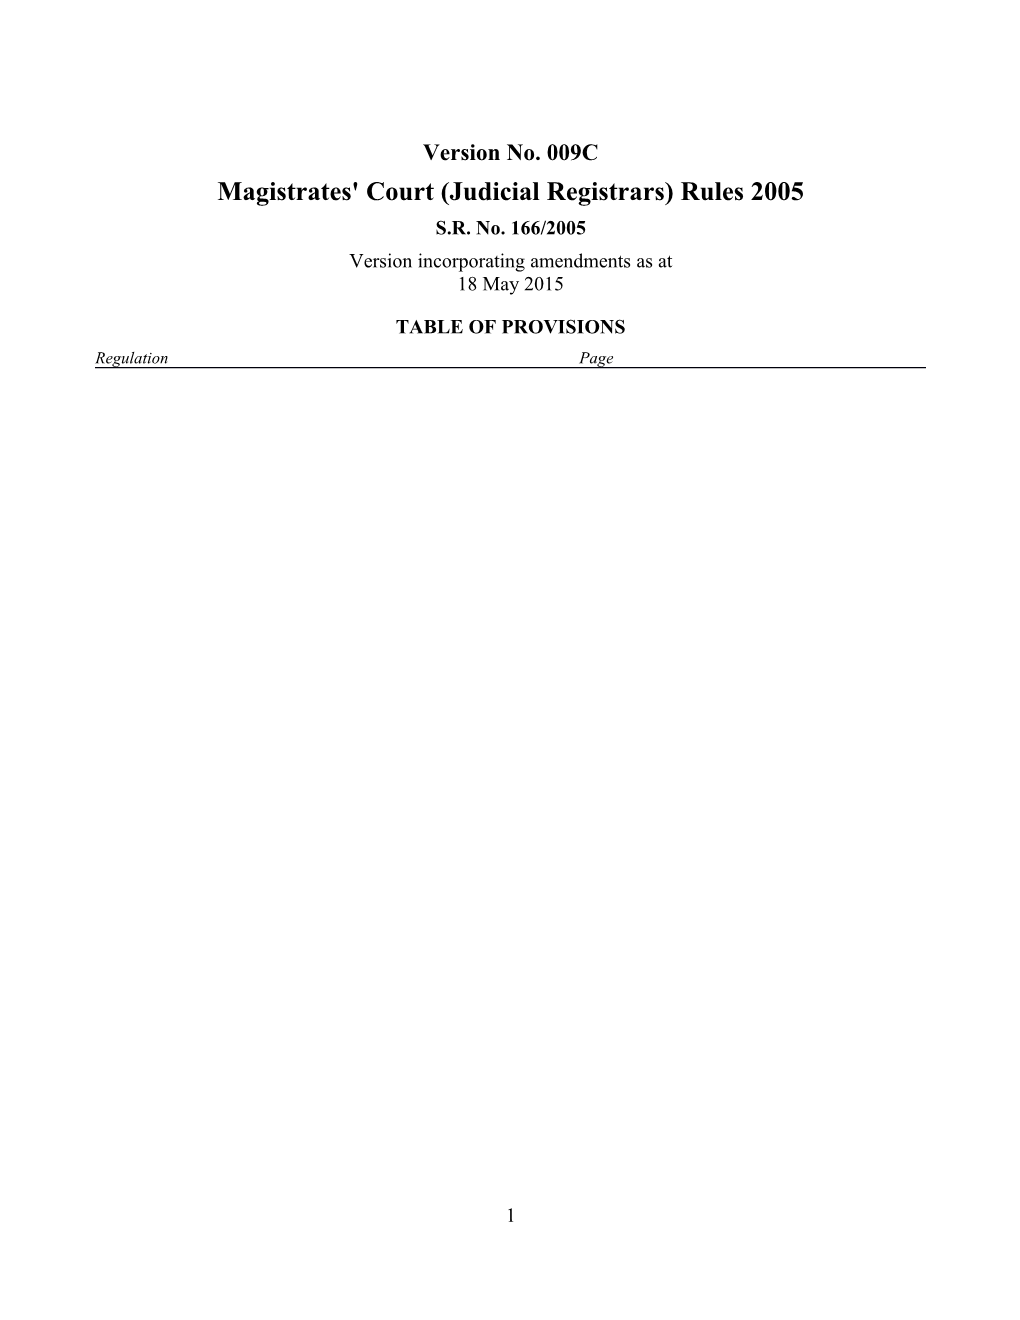 Magistrates' Court (Judicial Registrars) Rules 2005